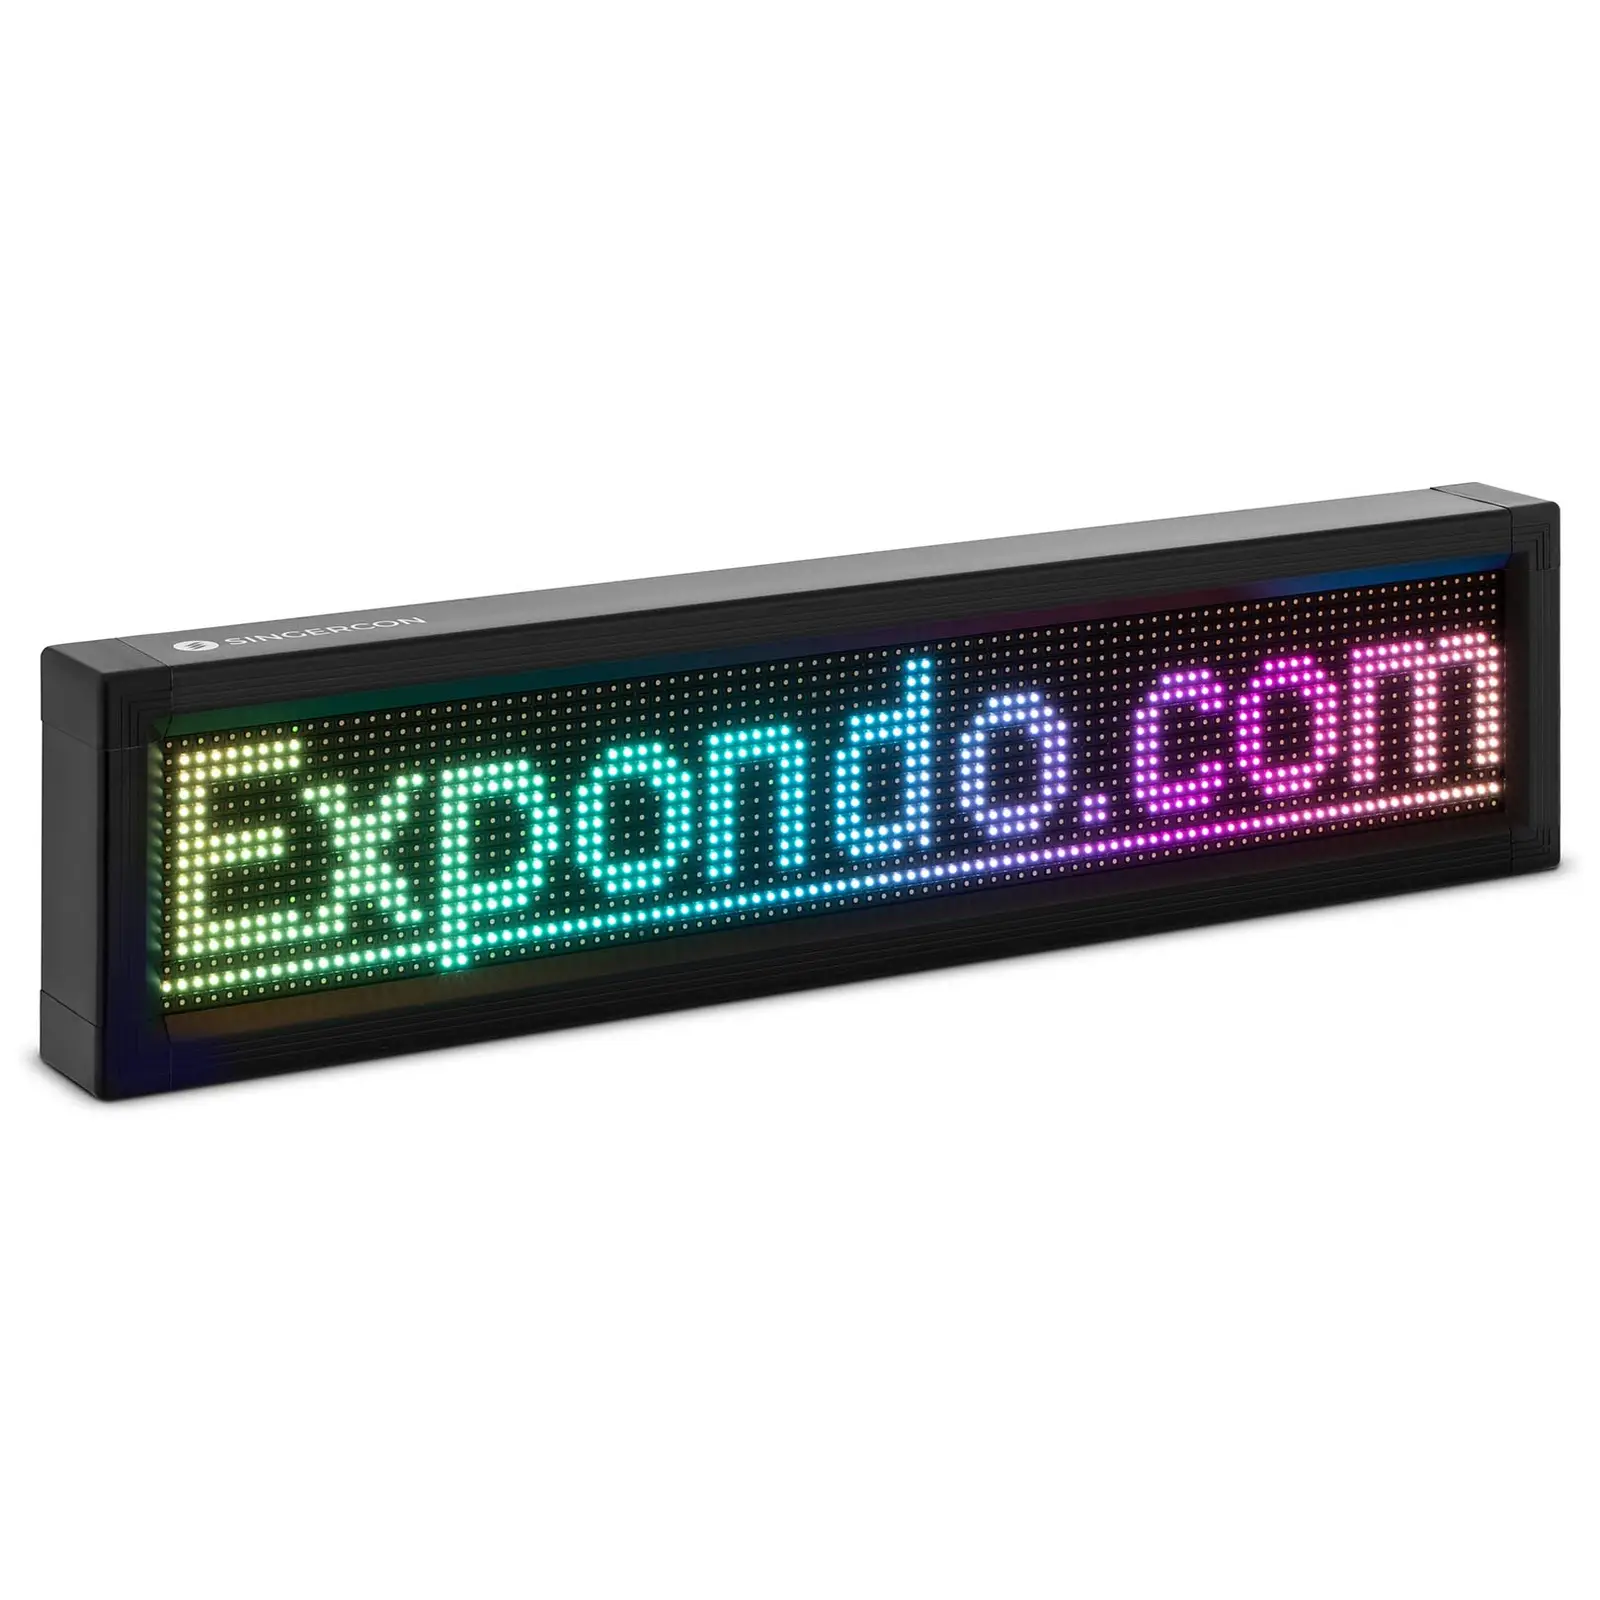 Painel LED publicidade - 96 x 16 LEDs coloridos - 67 x 19 cm - programável através de iOS e Android